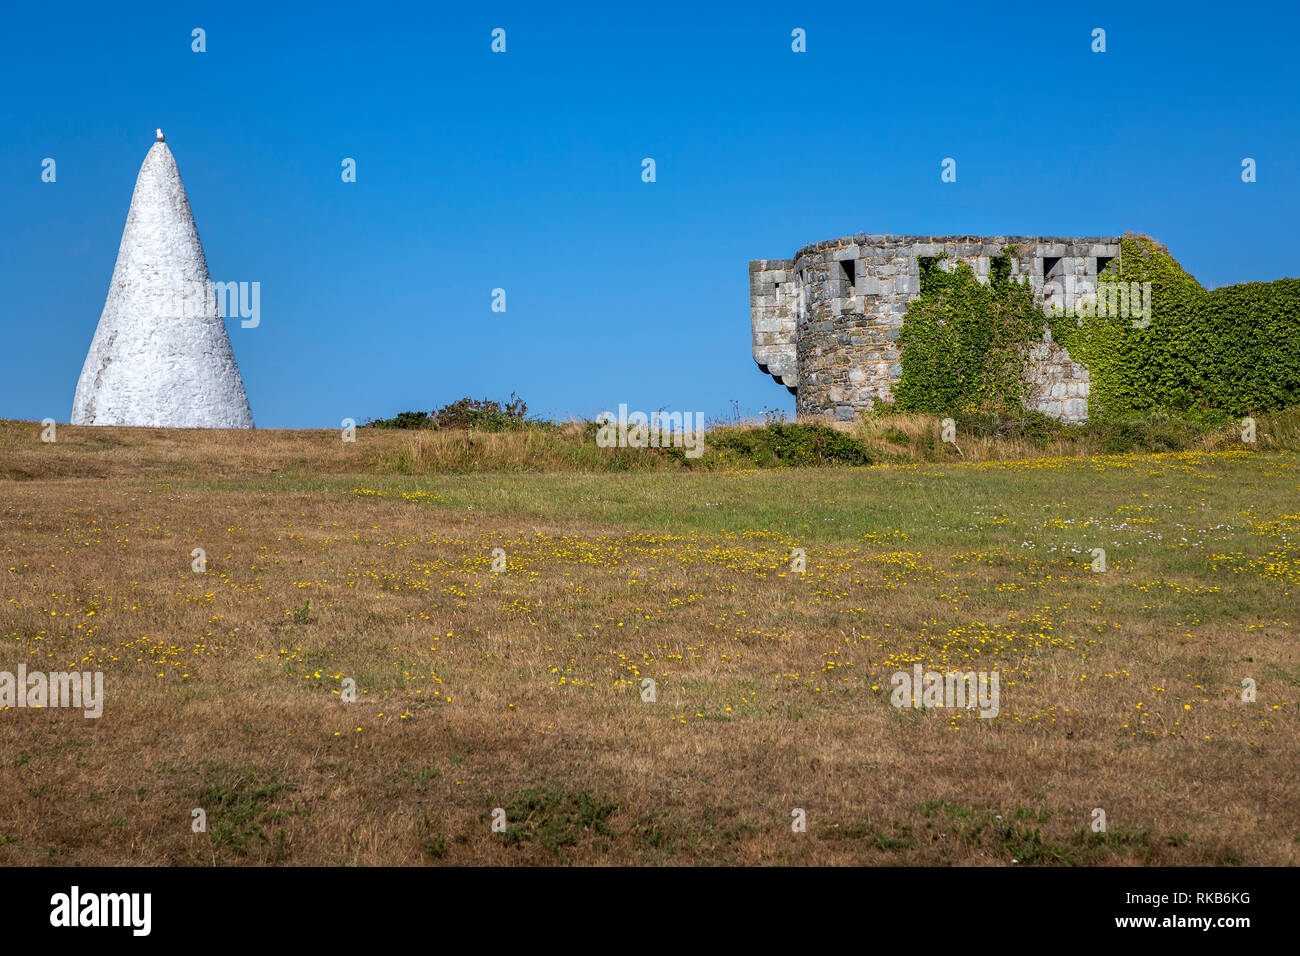 Fort Tourgis auf Alderney neben einem großen weißen Kegel Wahrzeichen für die Navigation verwendet. Stockfoto